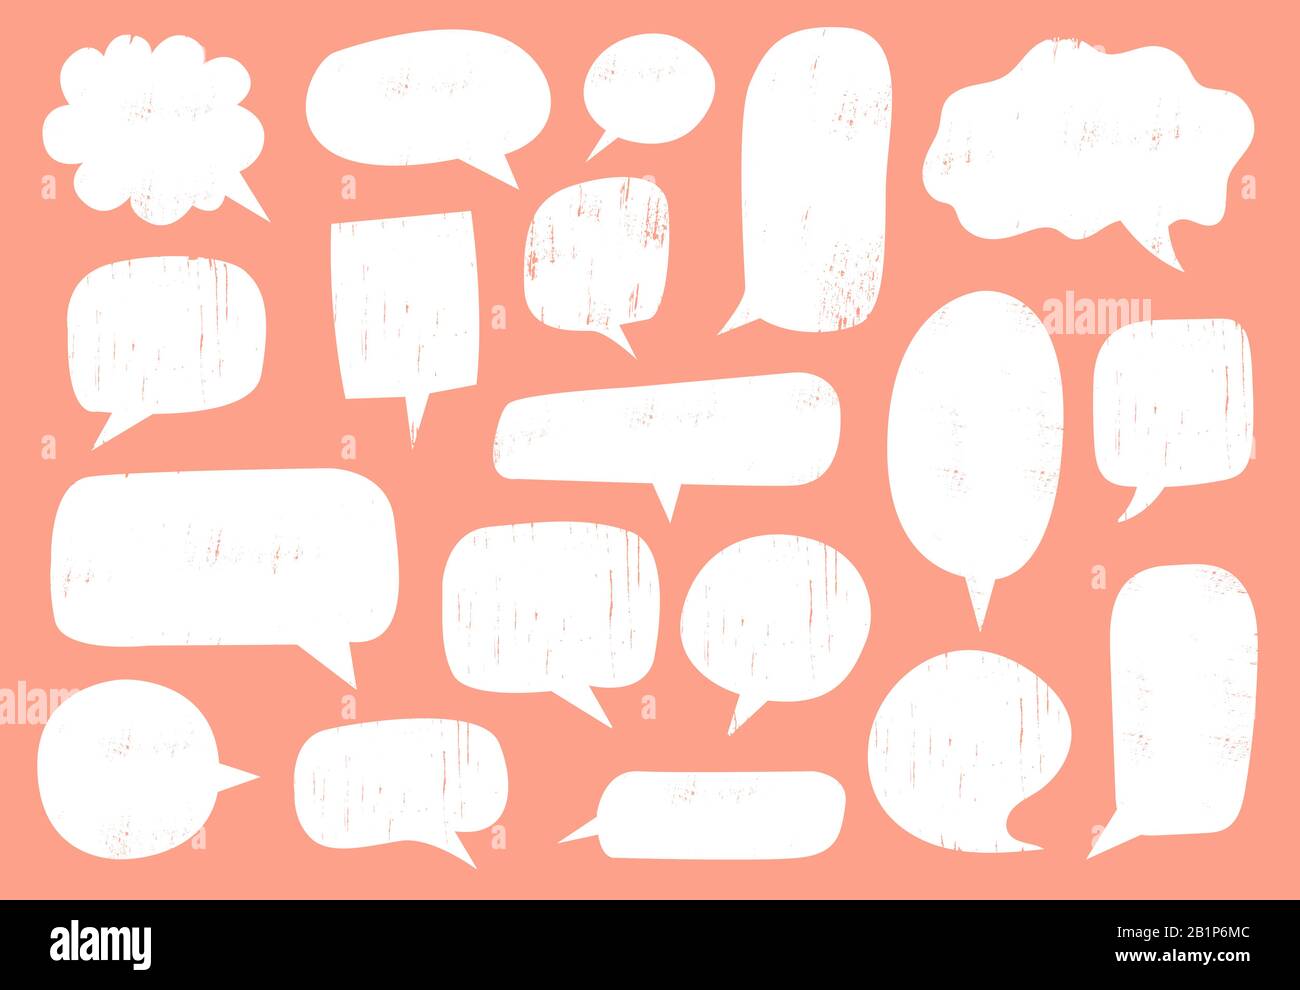 Strukturierte Sprechblase. Comic-Kommunikationsrahmen mit Stempeltextur, Hippster-Diskussionsballon und handgezeichneter Doodle-Chat-Blasenrahmen Vektor-Set Stock Vektor